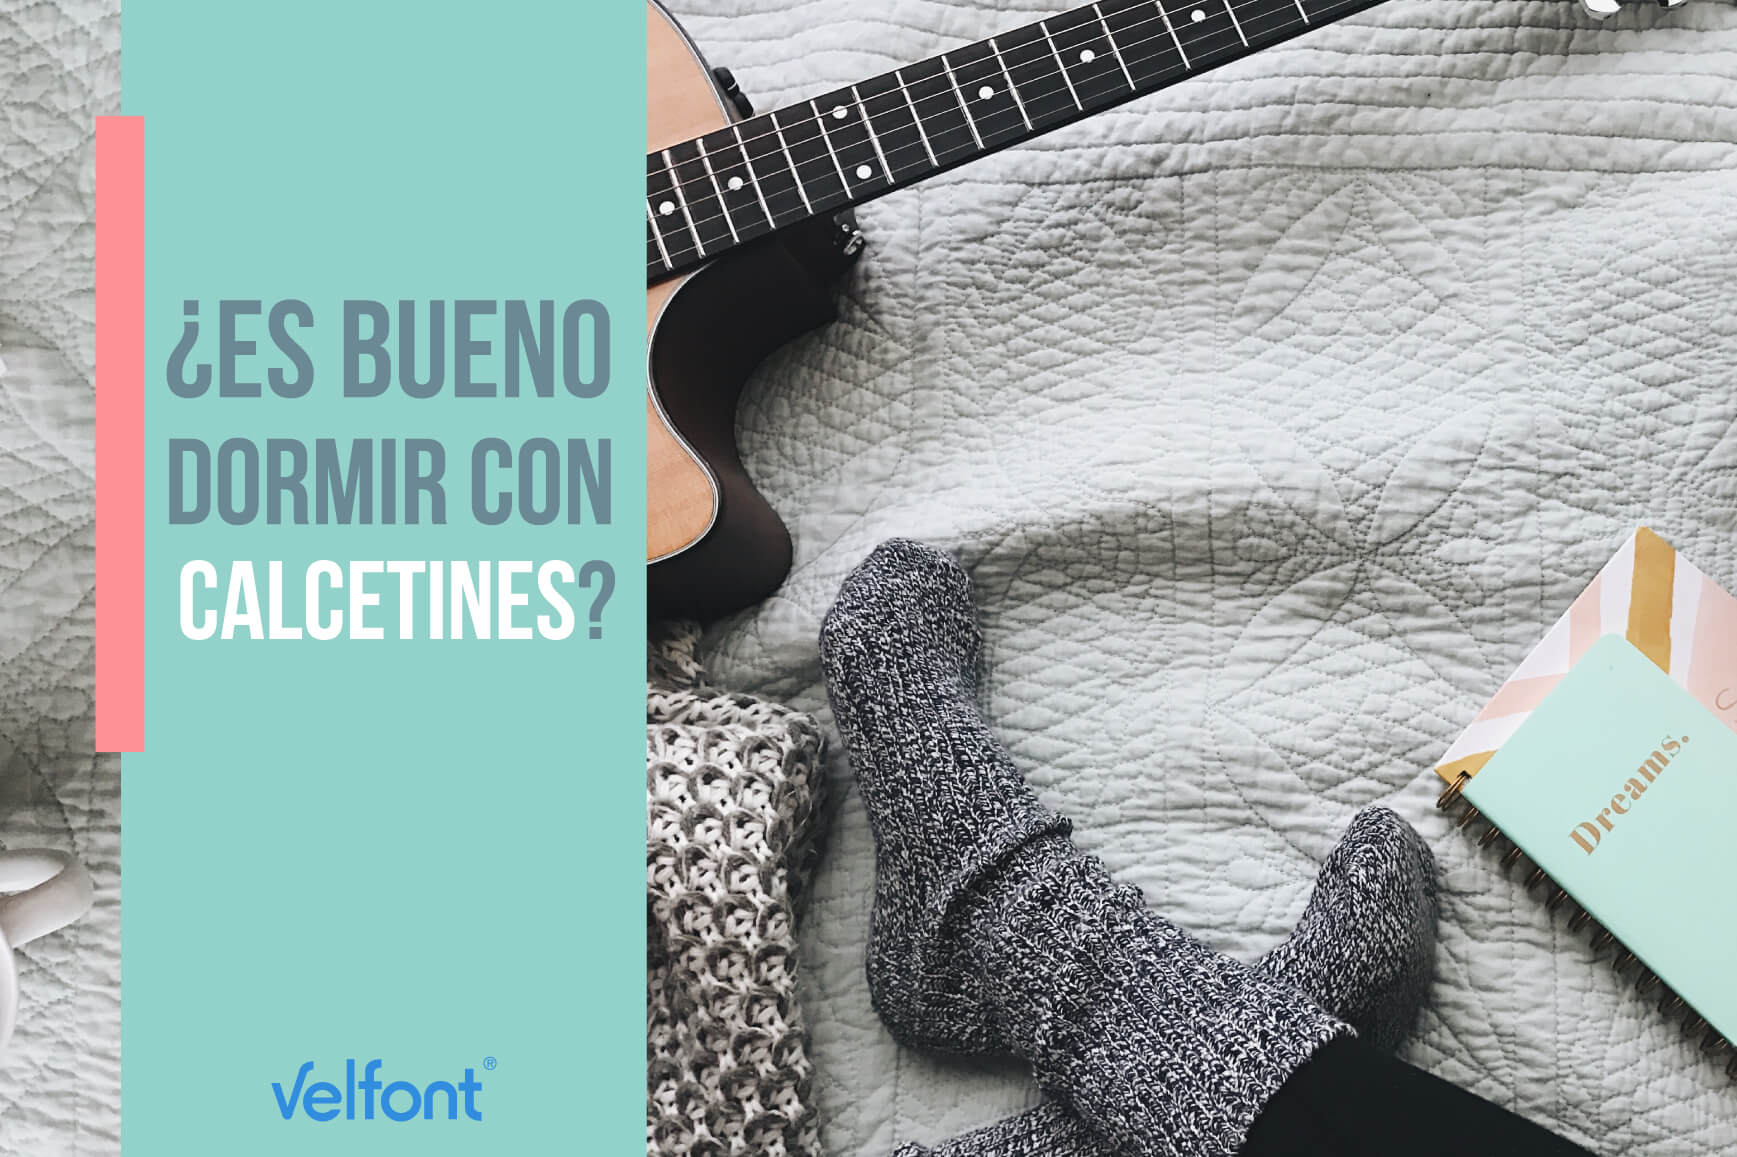 Es bueno dormir con calcetines? | Blog Velfont